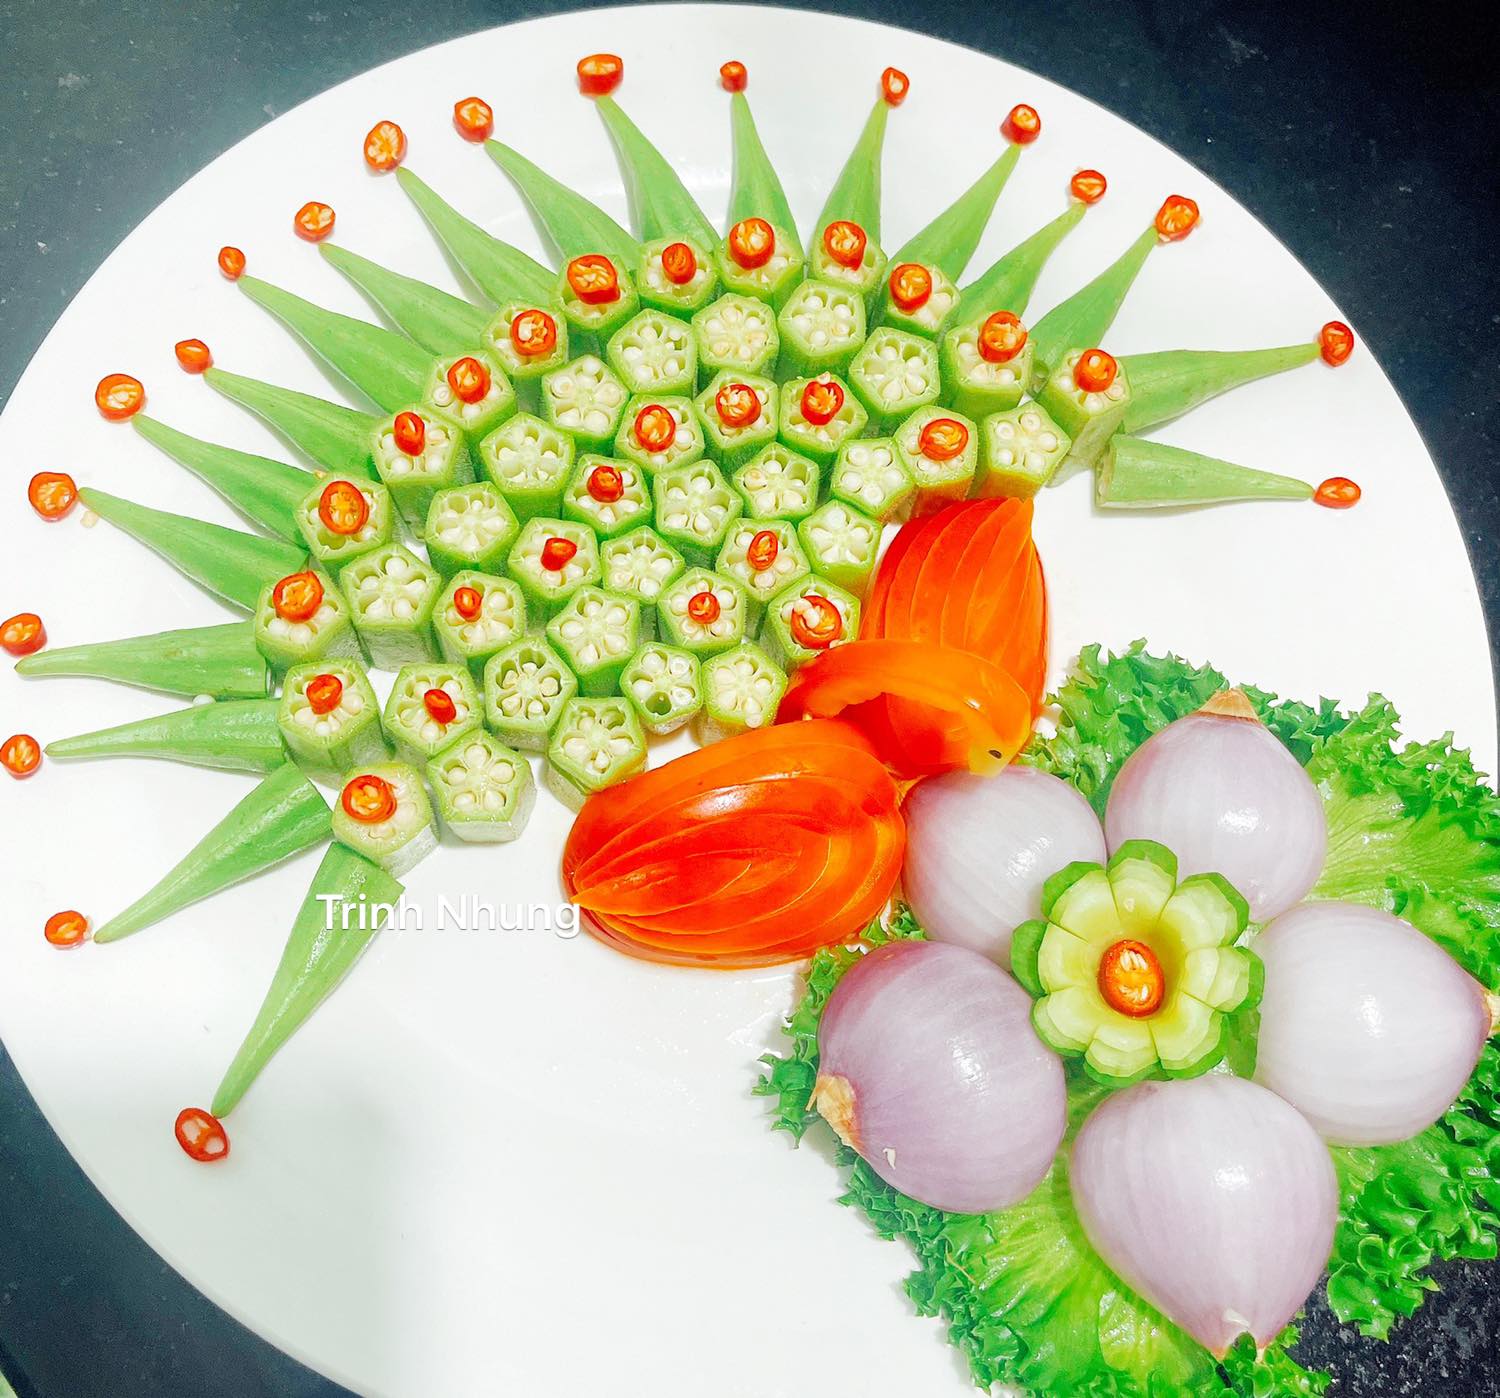 Tỉa hoa quả đẹp: Hãy thưởng thức hình ảnh những hoa quả được tỉa tinh tế, đẹp mắt, tạo nên một bữa ăn đầy màu sắc và vị trí cực kì tuyệt vời cho các dịp lễ tết hoặc tiệc sinh nhật.